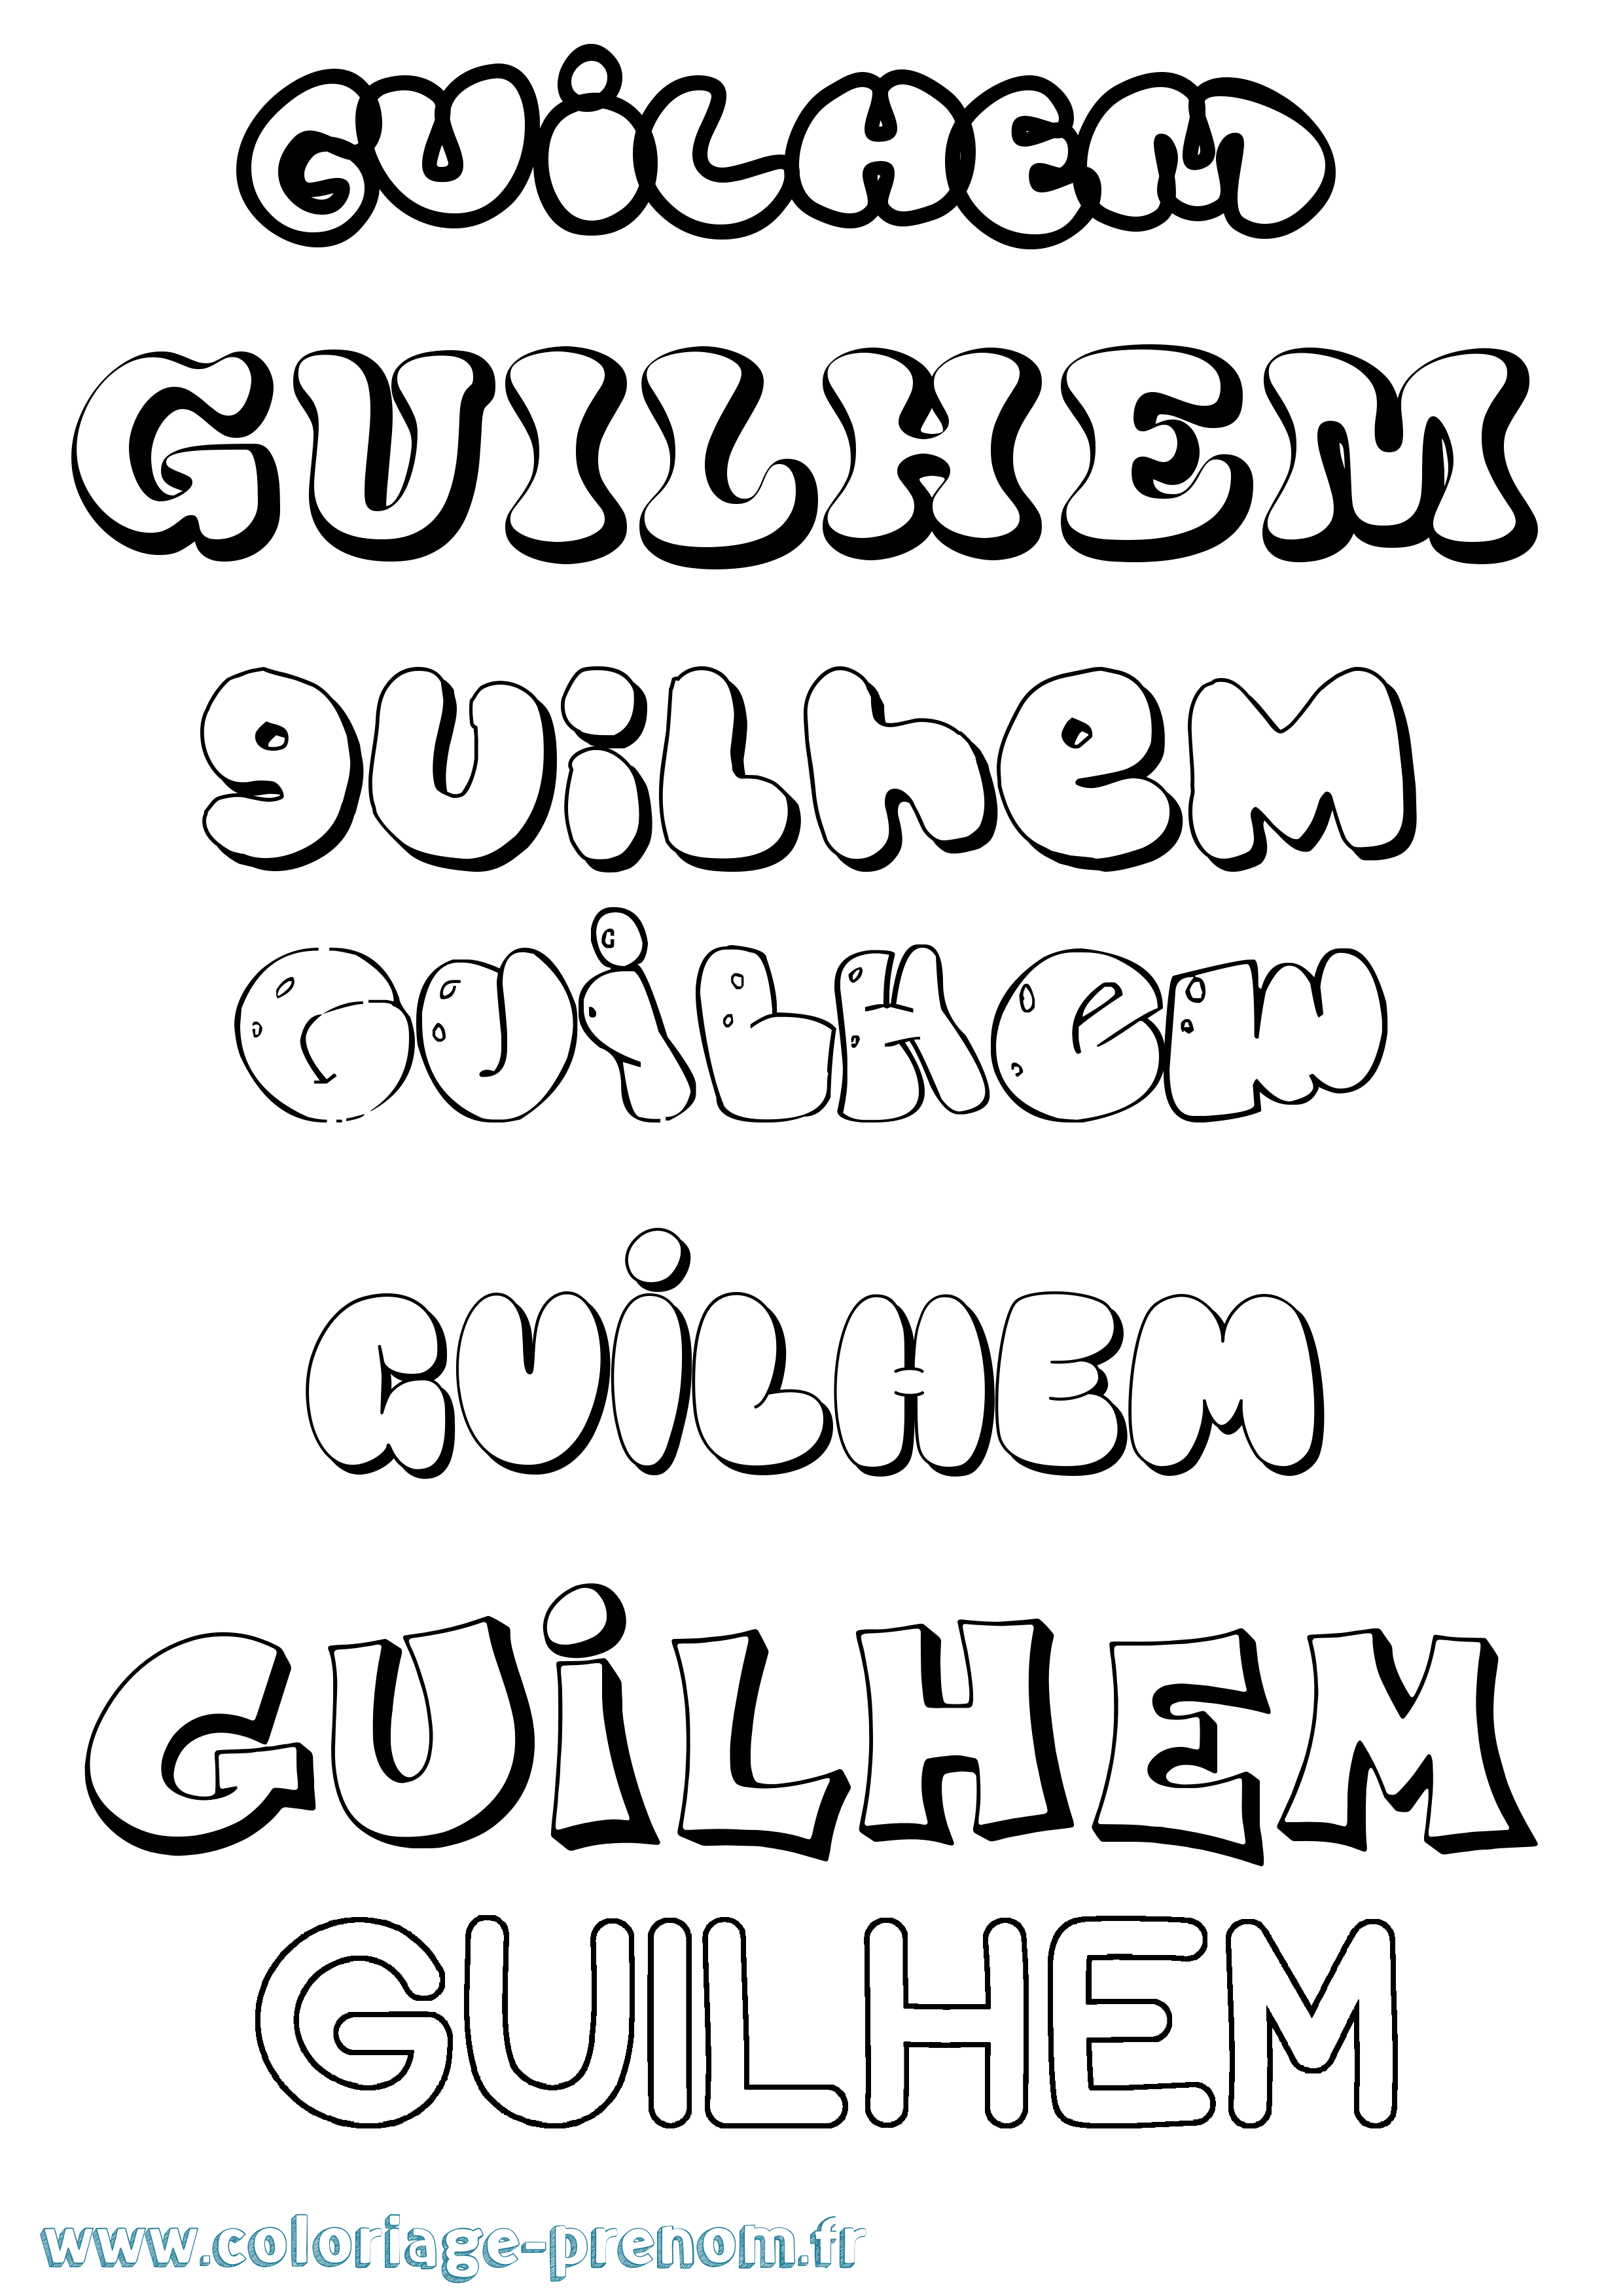 Coloriage prénom Guilhem Bubble